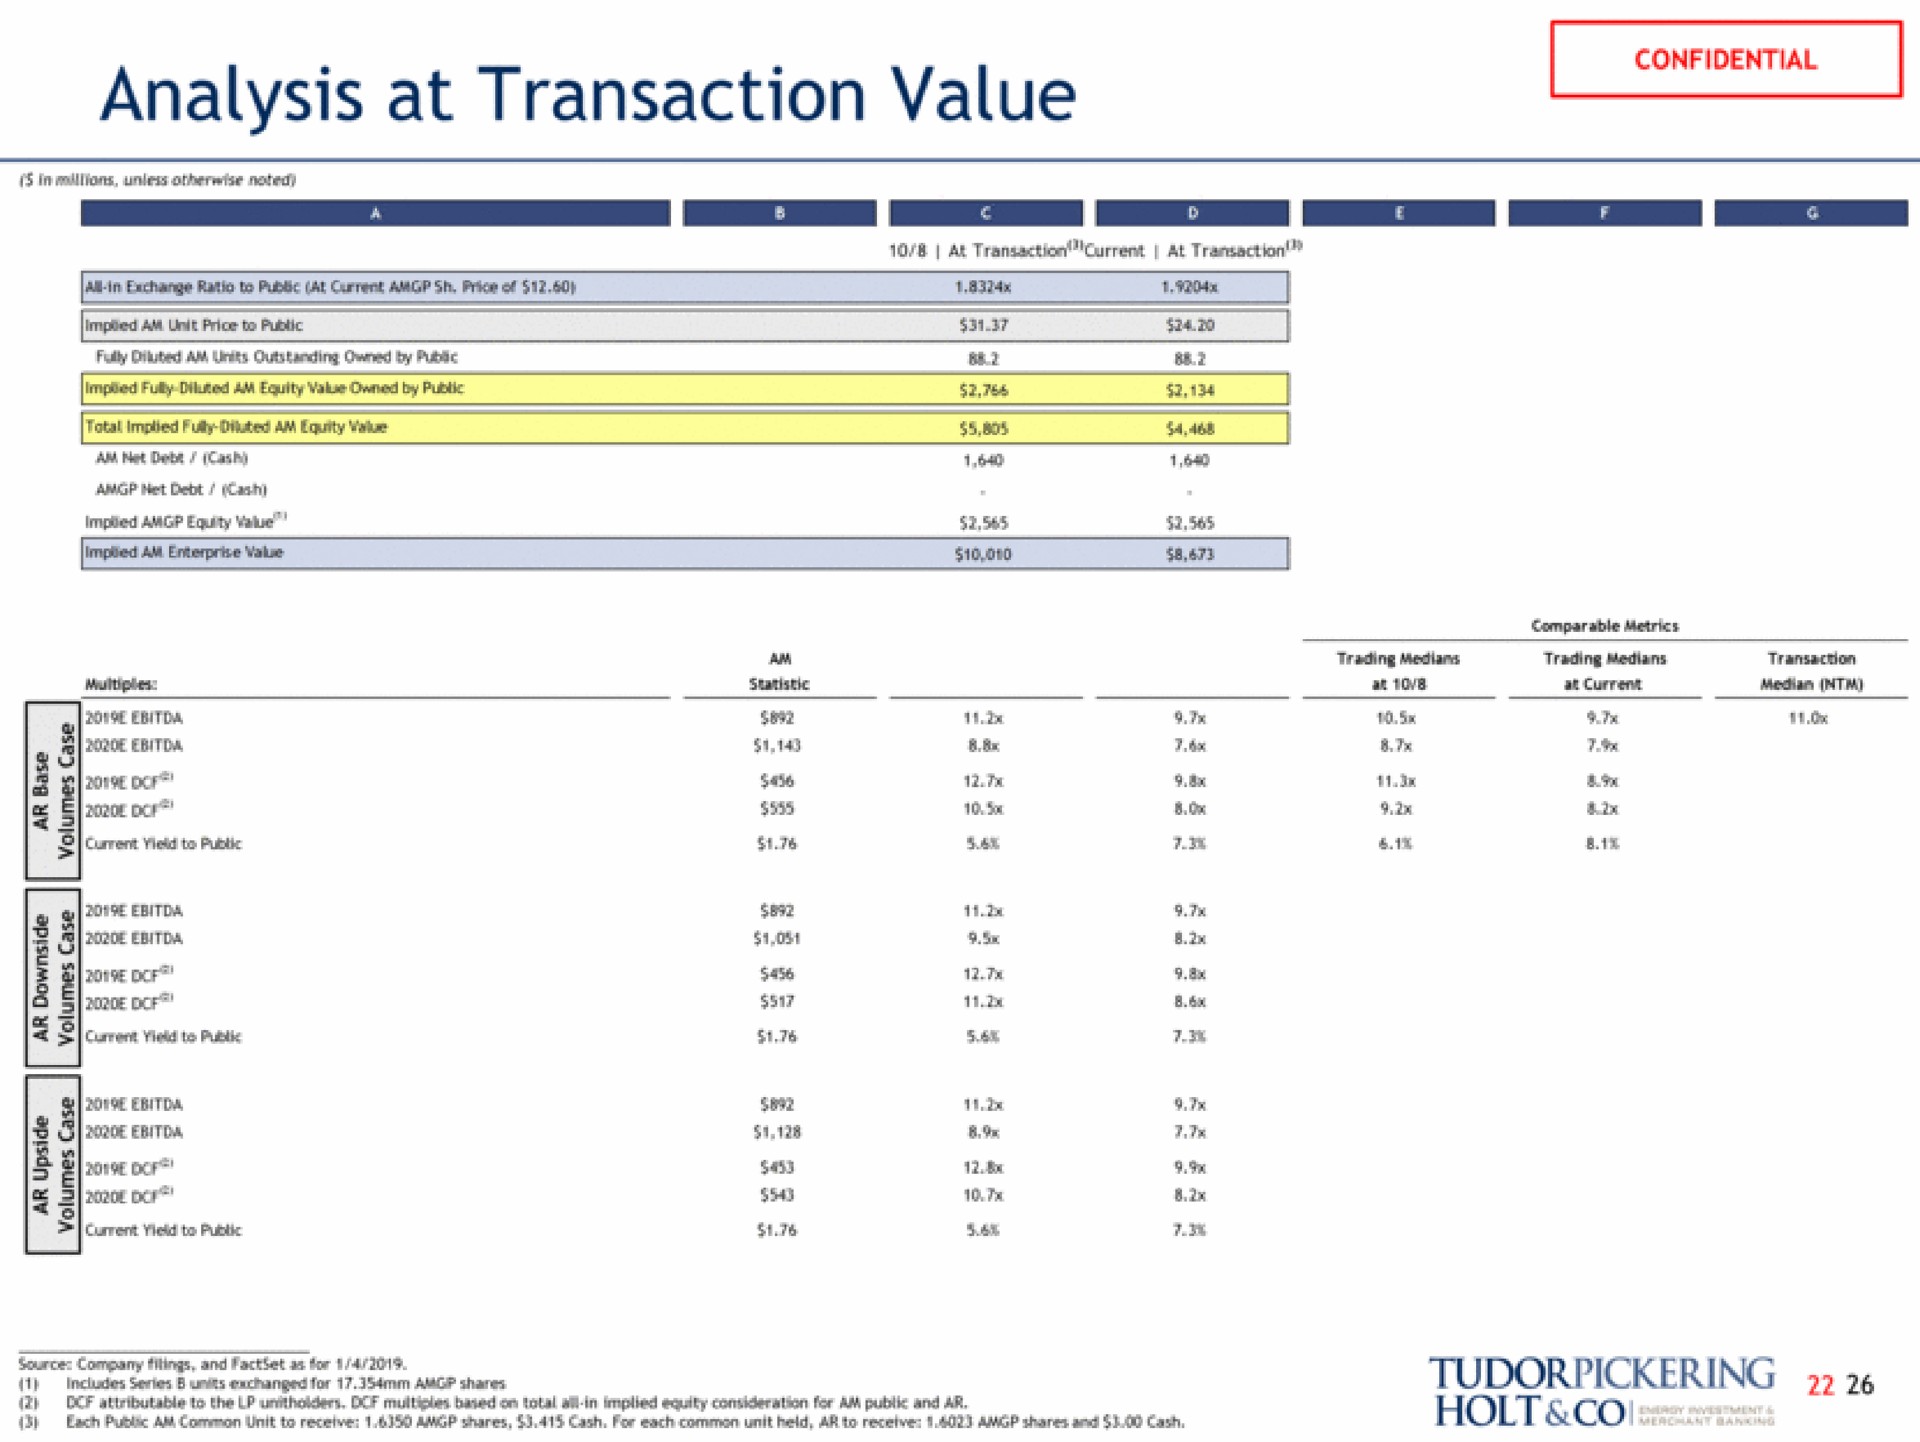 analysis at transaction value senior for shares ean | Tudor, Pickering, Holt & Co